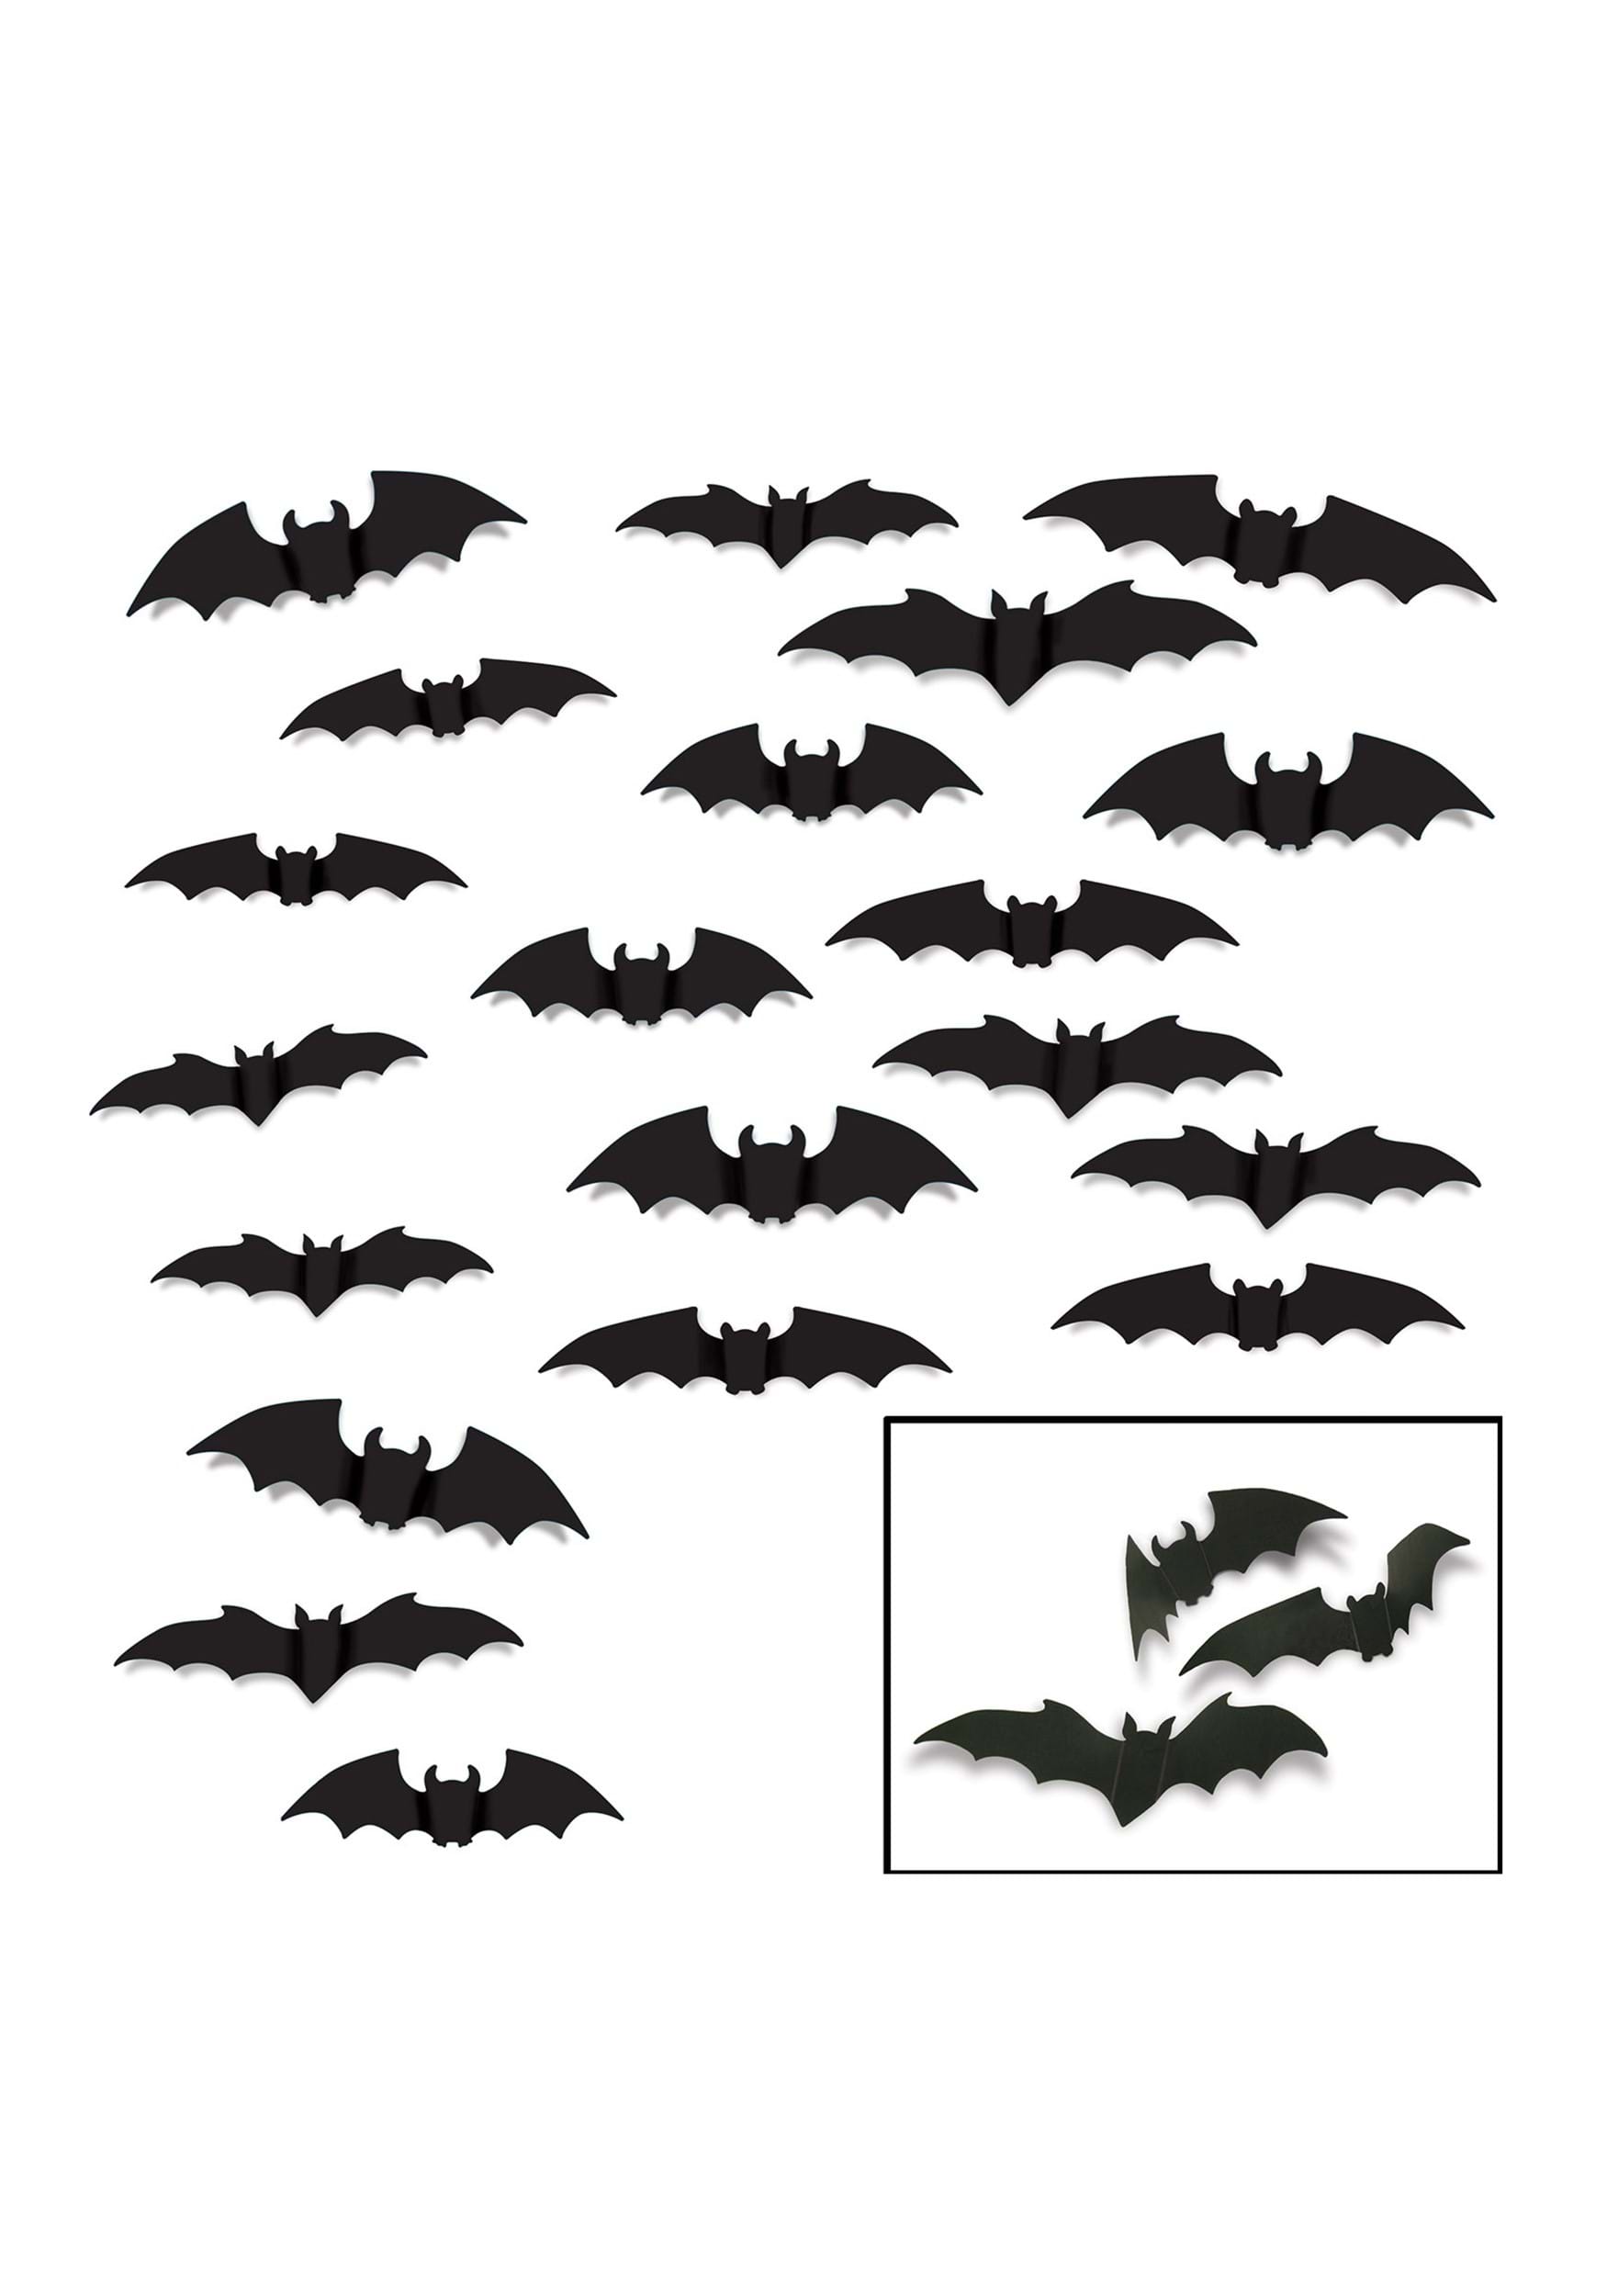 Set of 20 Poster Board Black Bats Decoration